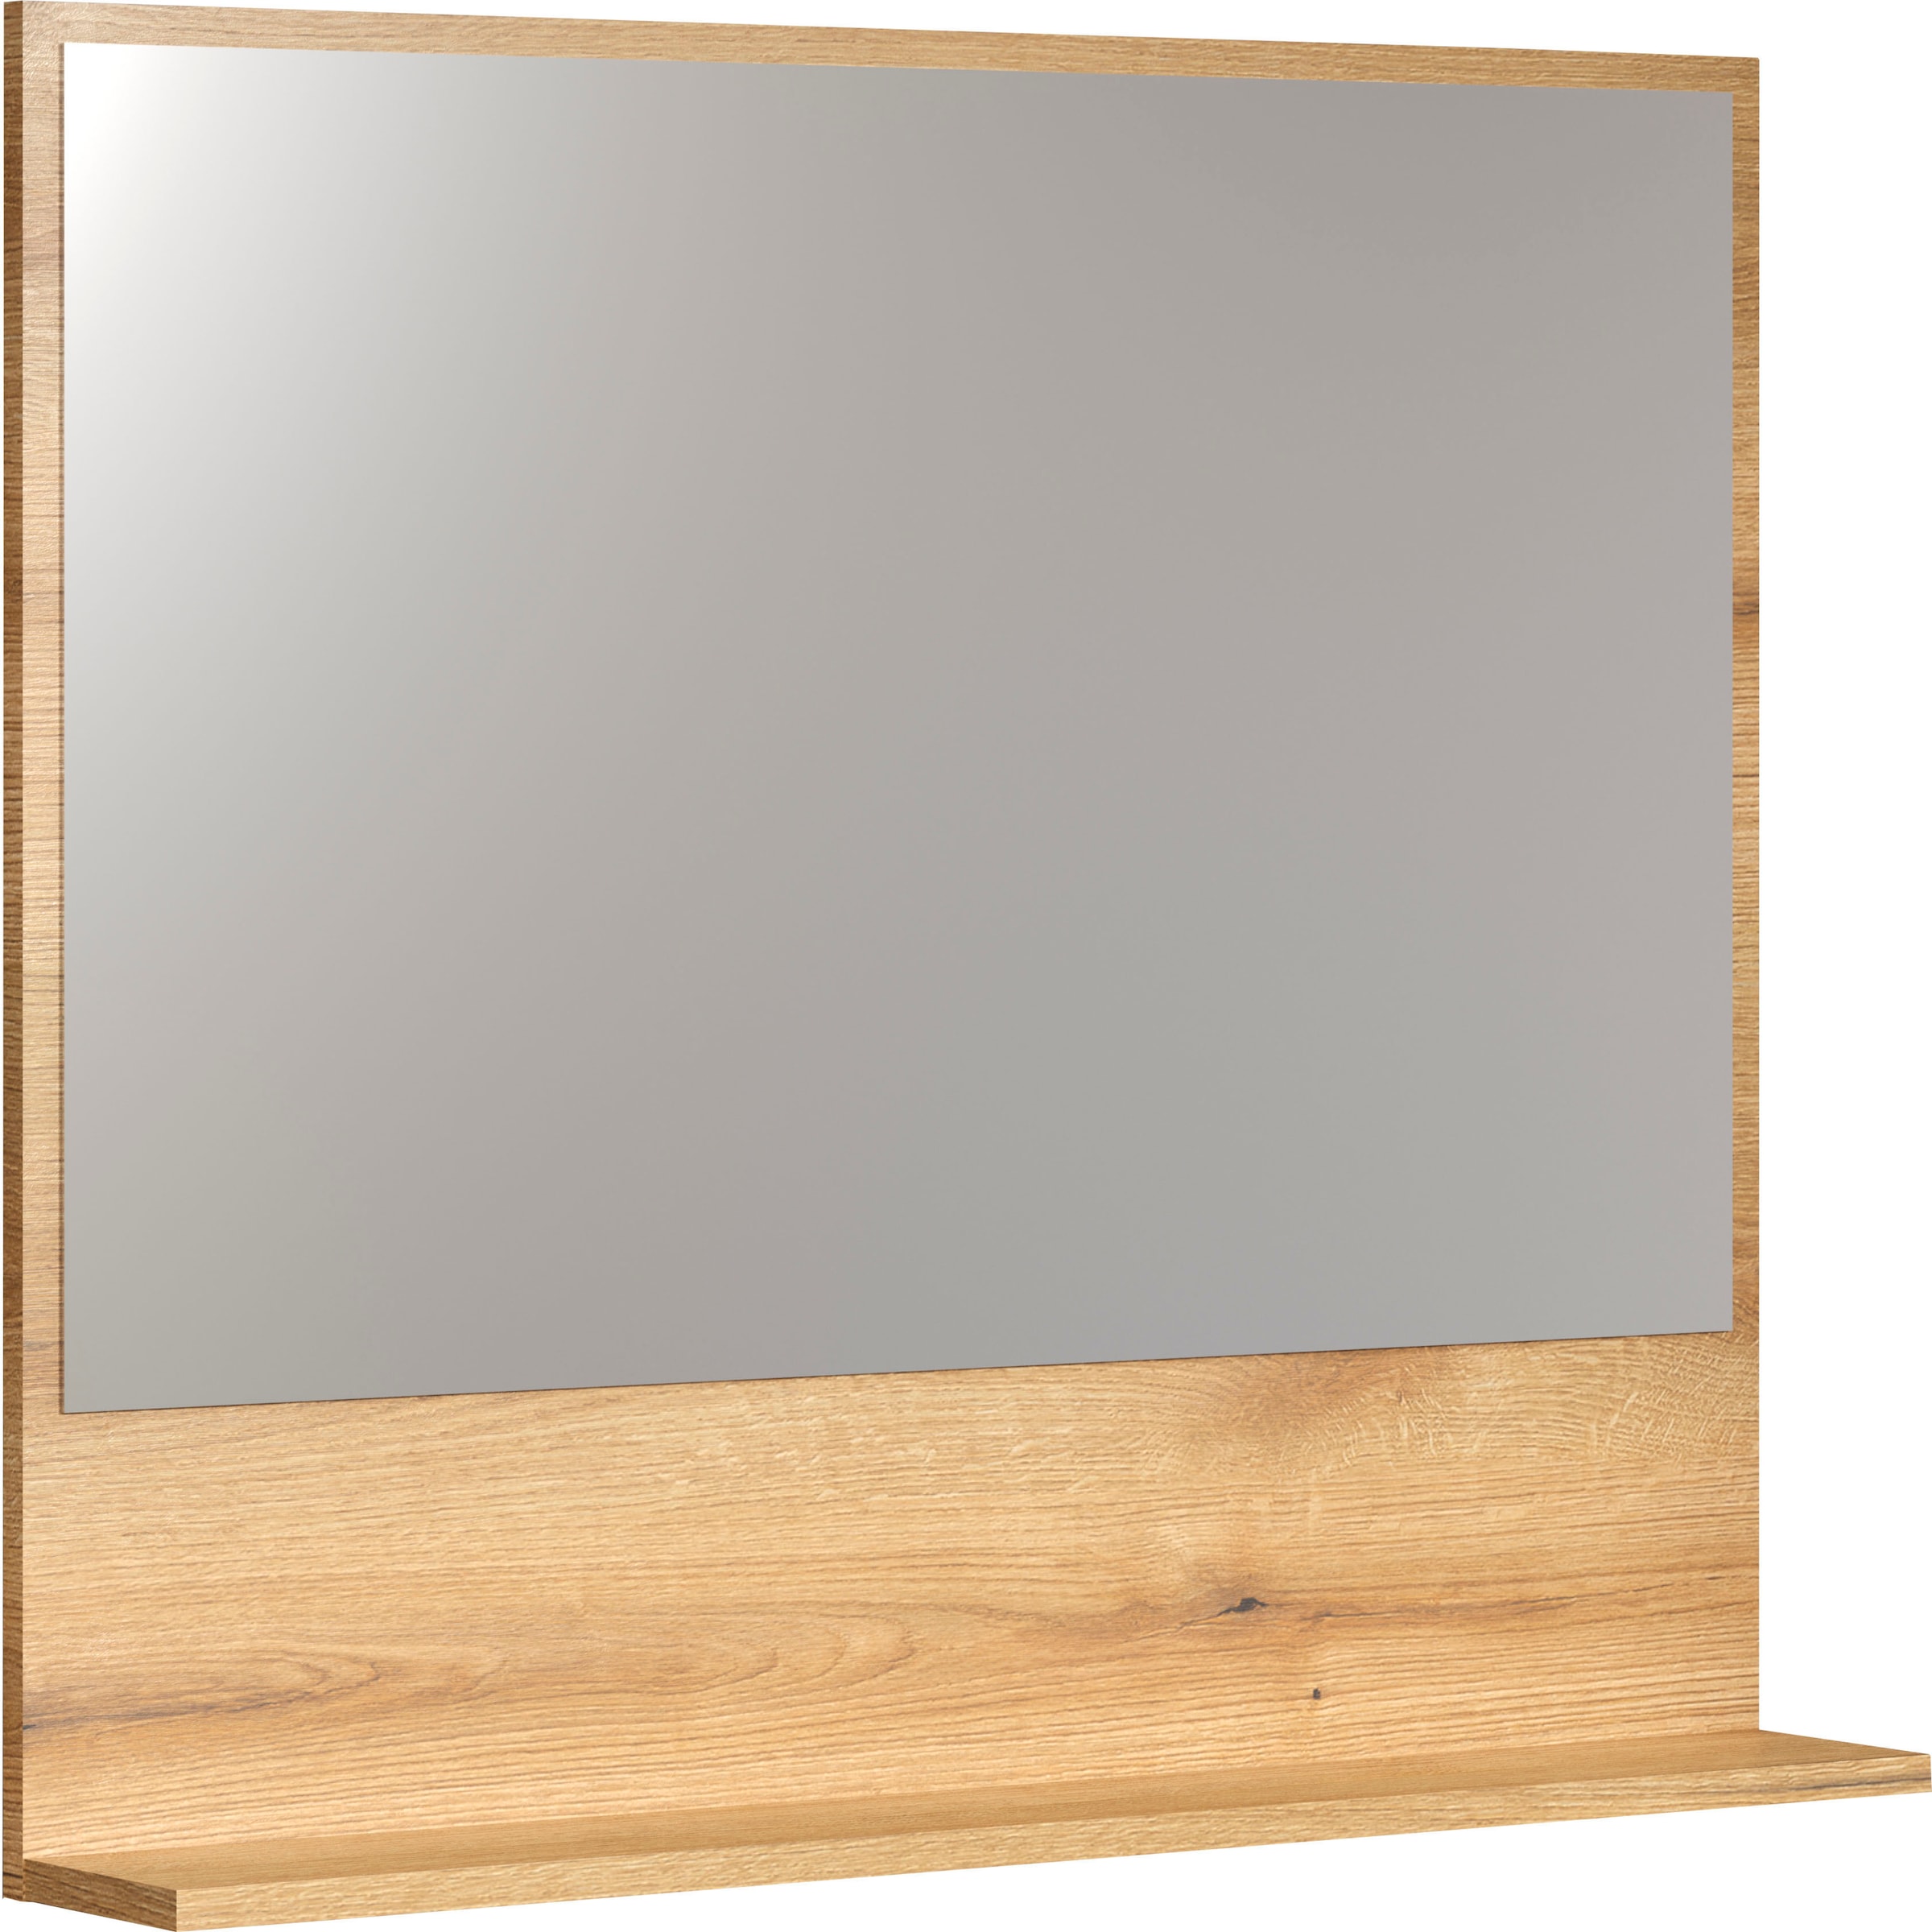 welltime Spiegel »Amrum Badezimmerspiegel Badmöbel Wandspiegel«, BxHxT 80 x 74 x 14cm eleganter Spiegel in einem zeitlosen Eiche Dekor